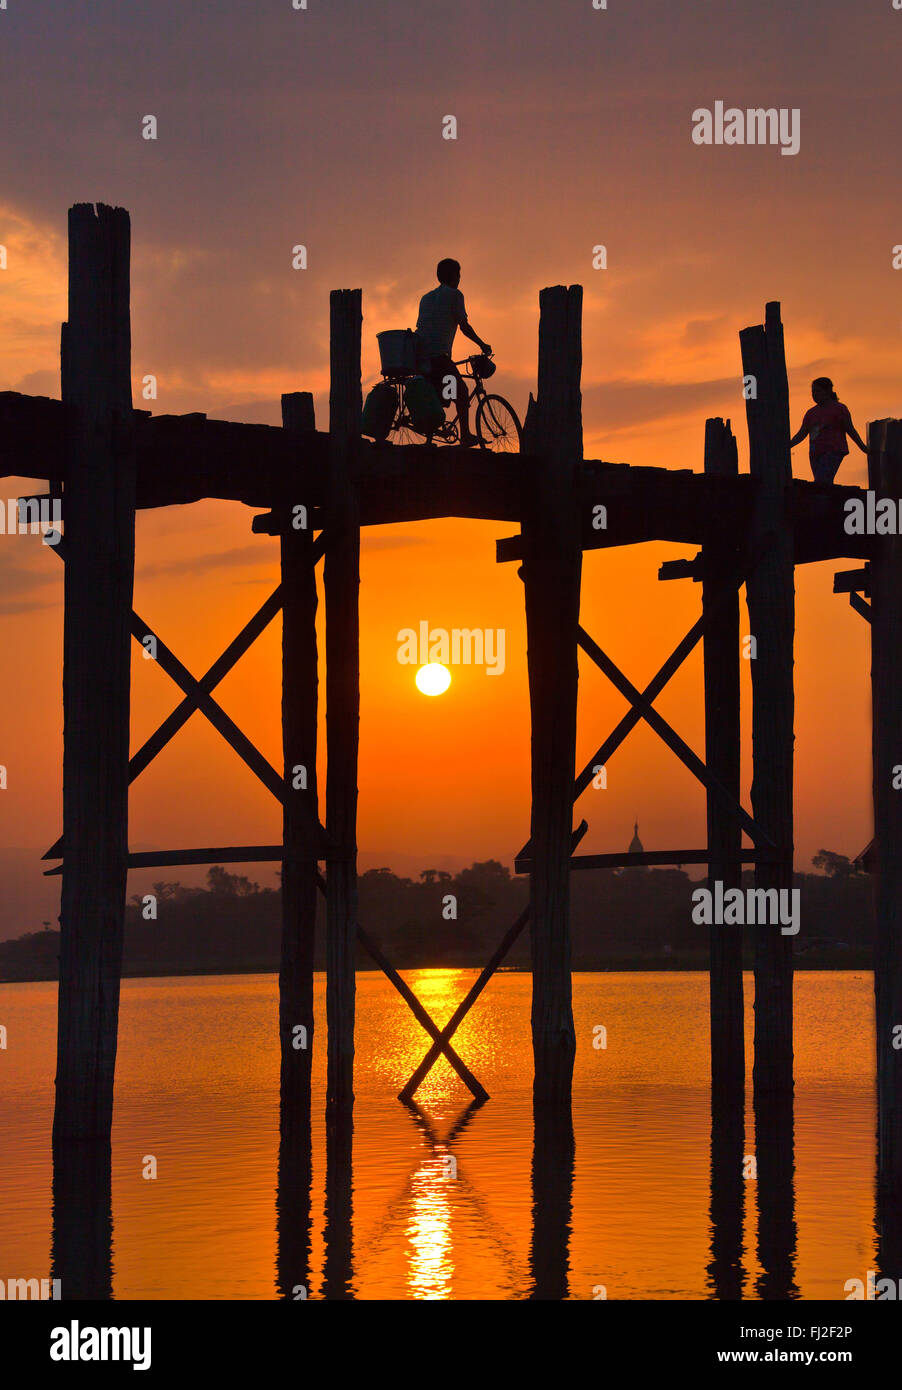 Les Birmans utilisent le pont en teck U BEINS de commuer à travers le lac Taungthaman au lever du soleil - AMARAPURA, MYANMAR Banque D'Images